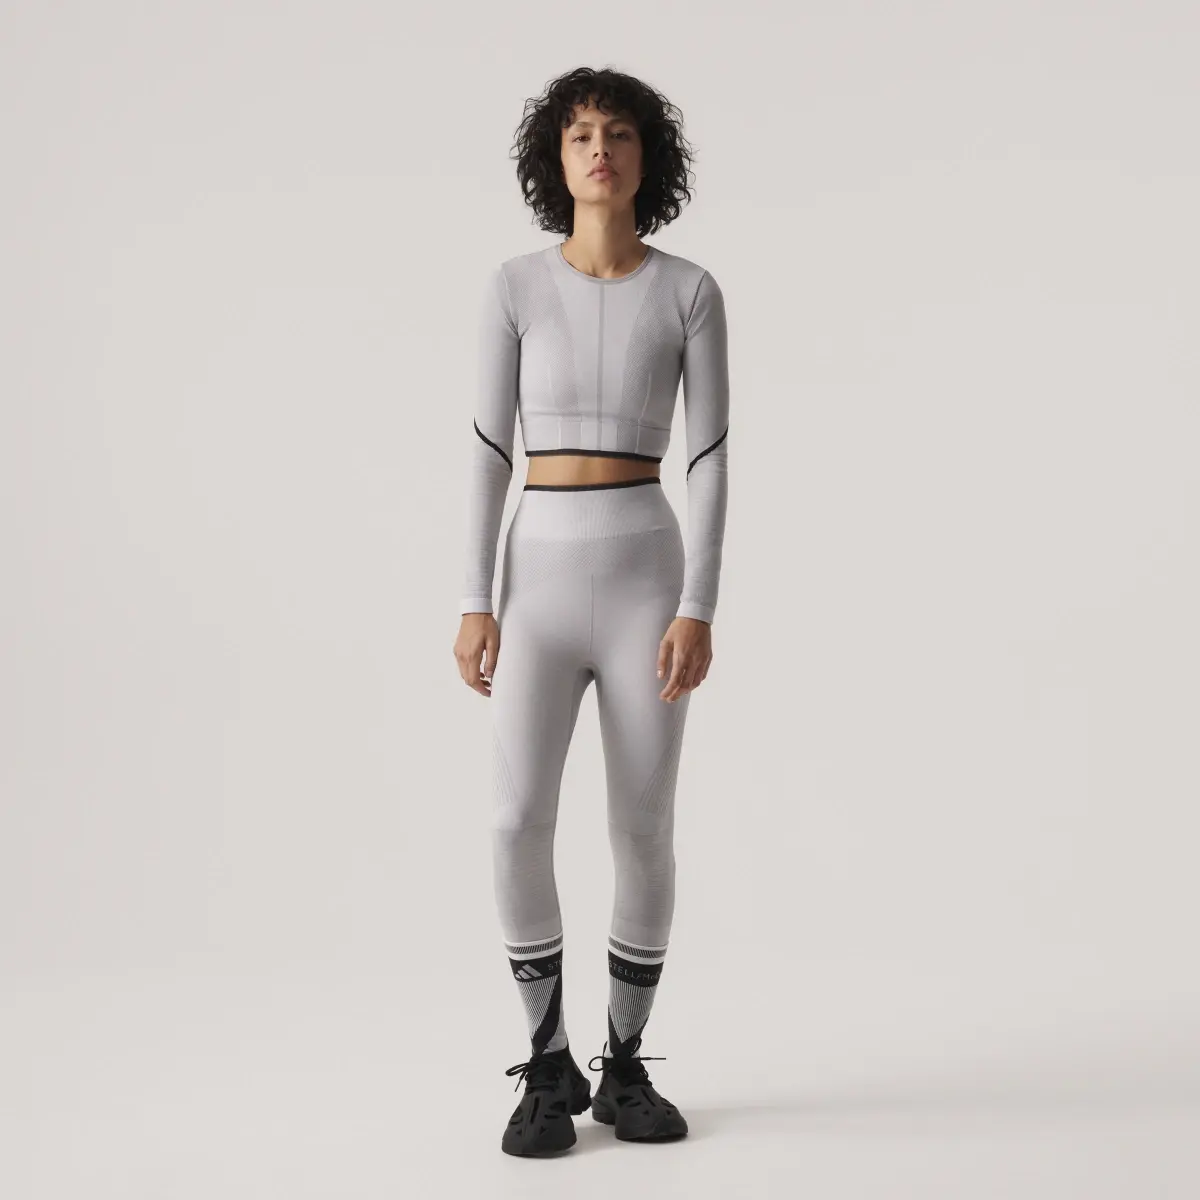 Adidas Tight 7/8 adidas by Stella McCartney TrueStrength Seamless Yoga. 1